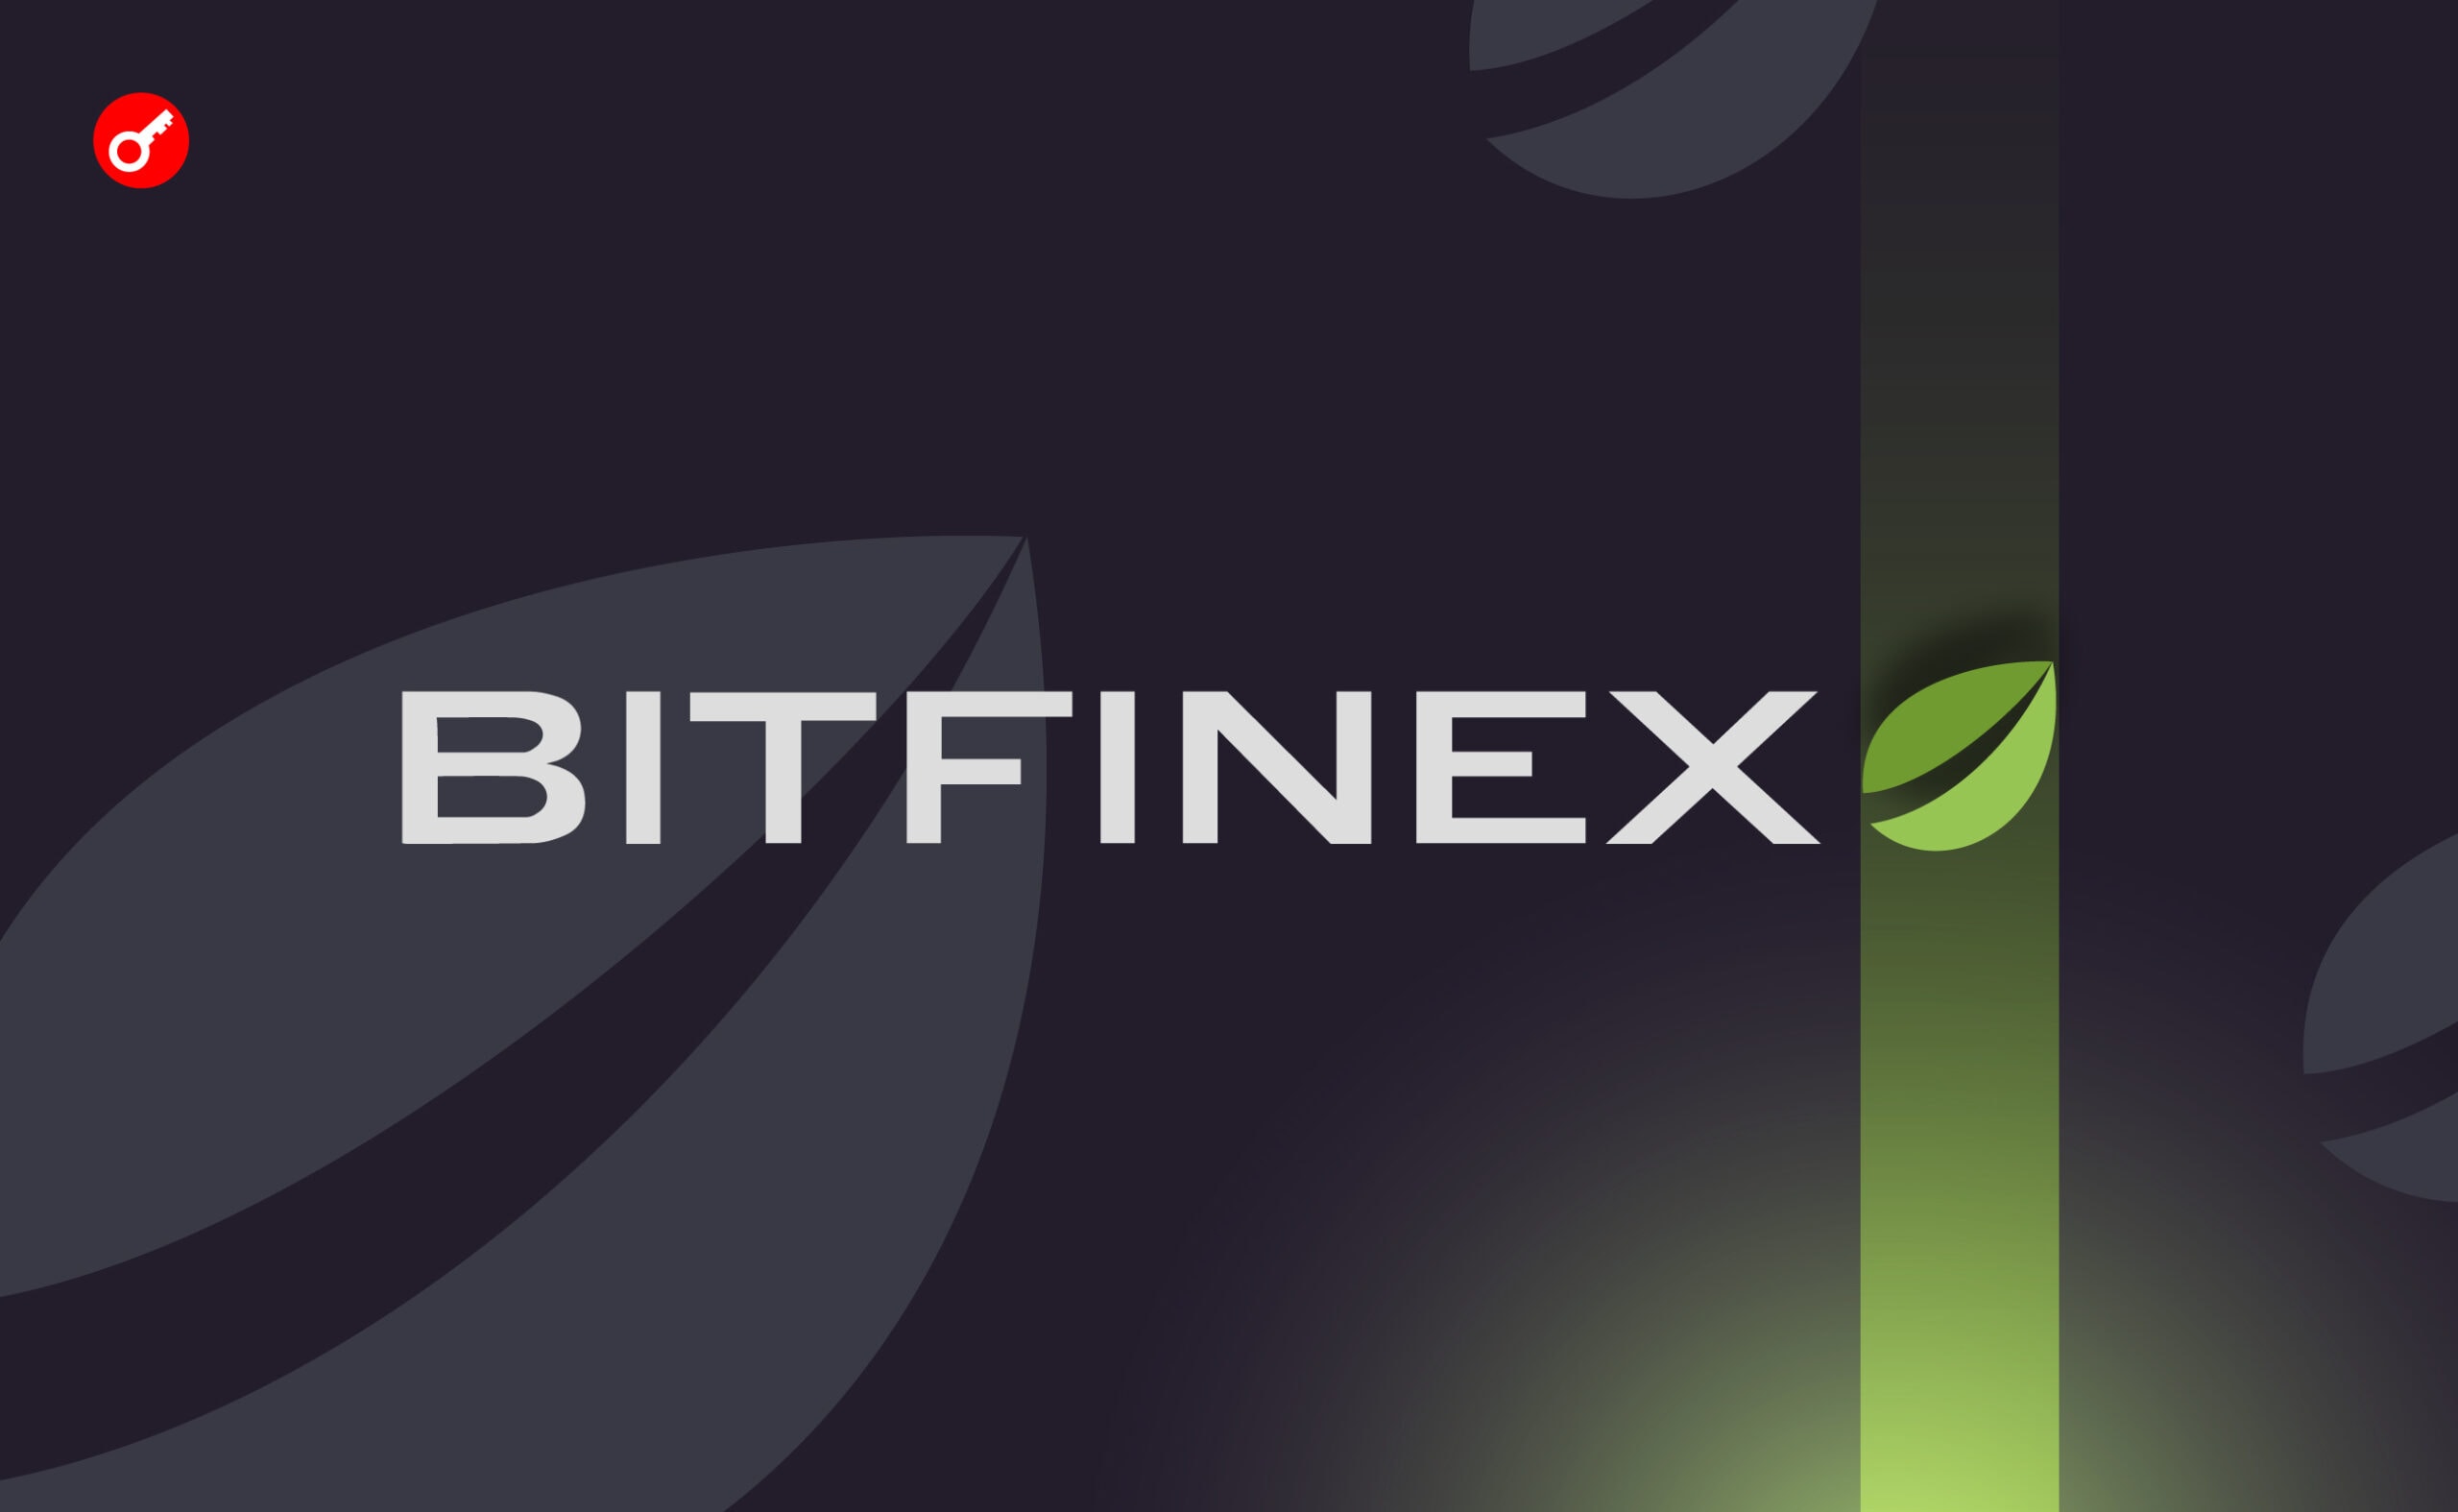 Bitfinex Securities объявила о выпуске первой токенизированной облигации. Заглавный коллаж новости.